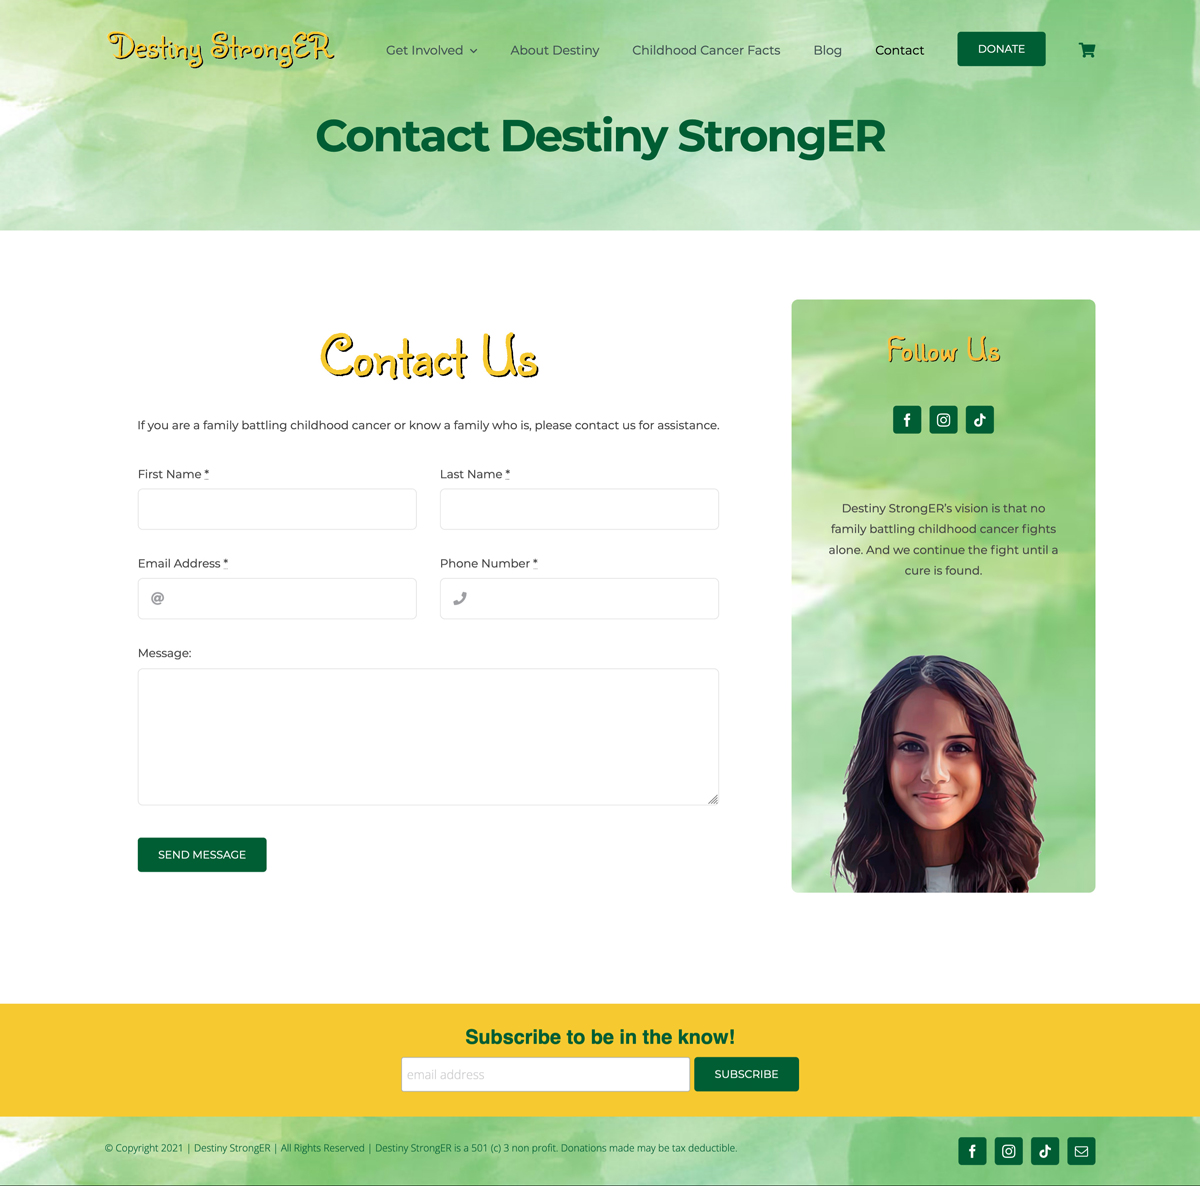 Destiny-Stronger a Non-Profit Website